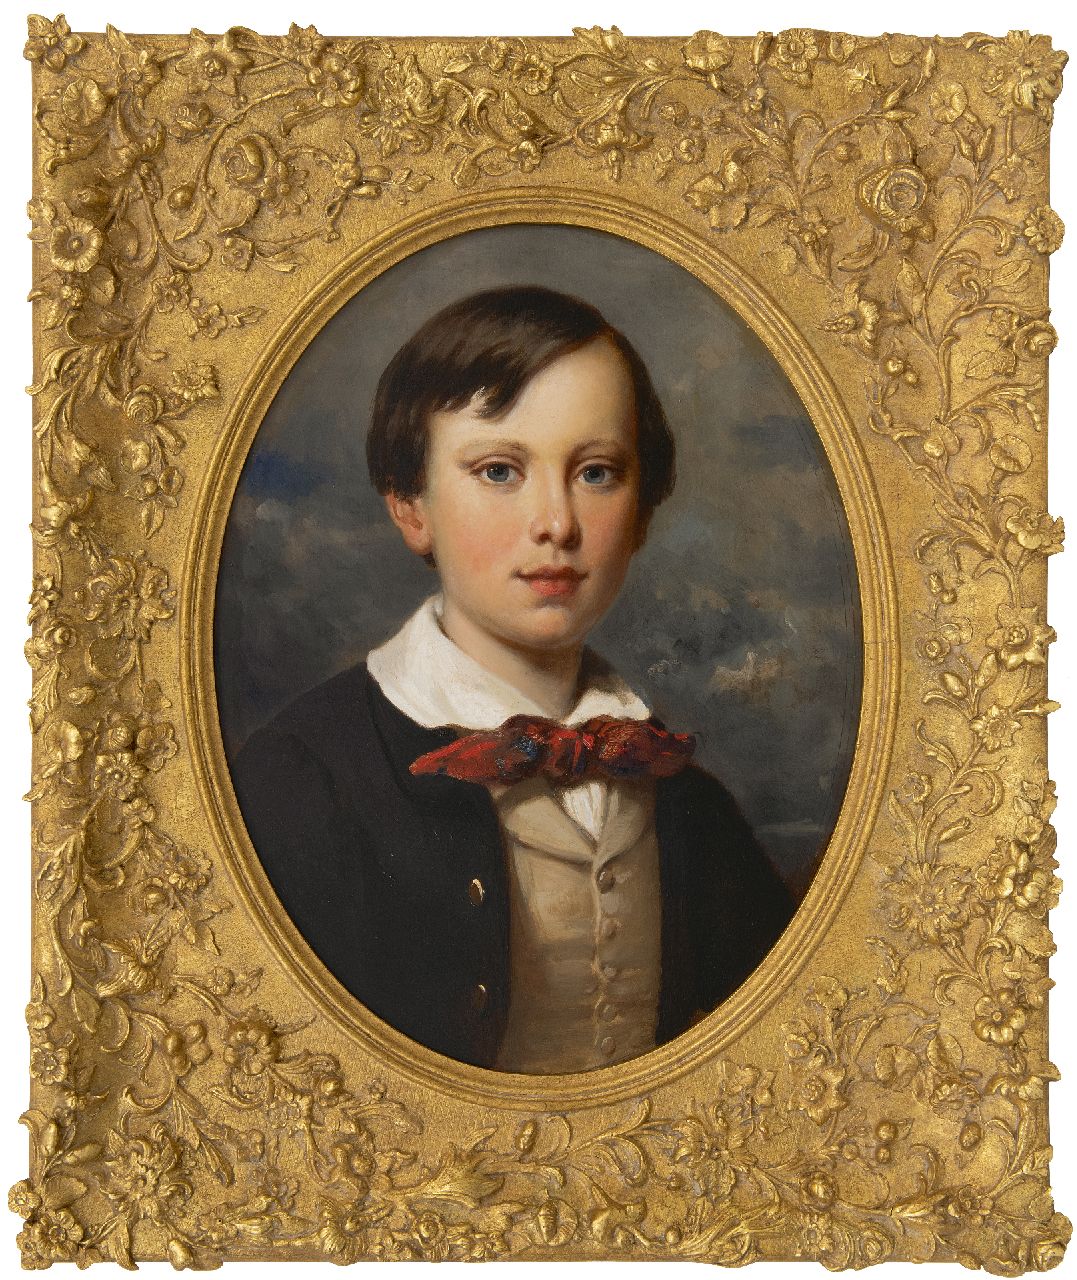 Pieneman N.  | Nicolaas Pieneman, Porträt des niederländischen Kronprinzen Wiwill, Öl auf Holz 51,6 x 37,3 cm, zu datieren um 1852-1853